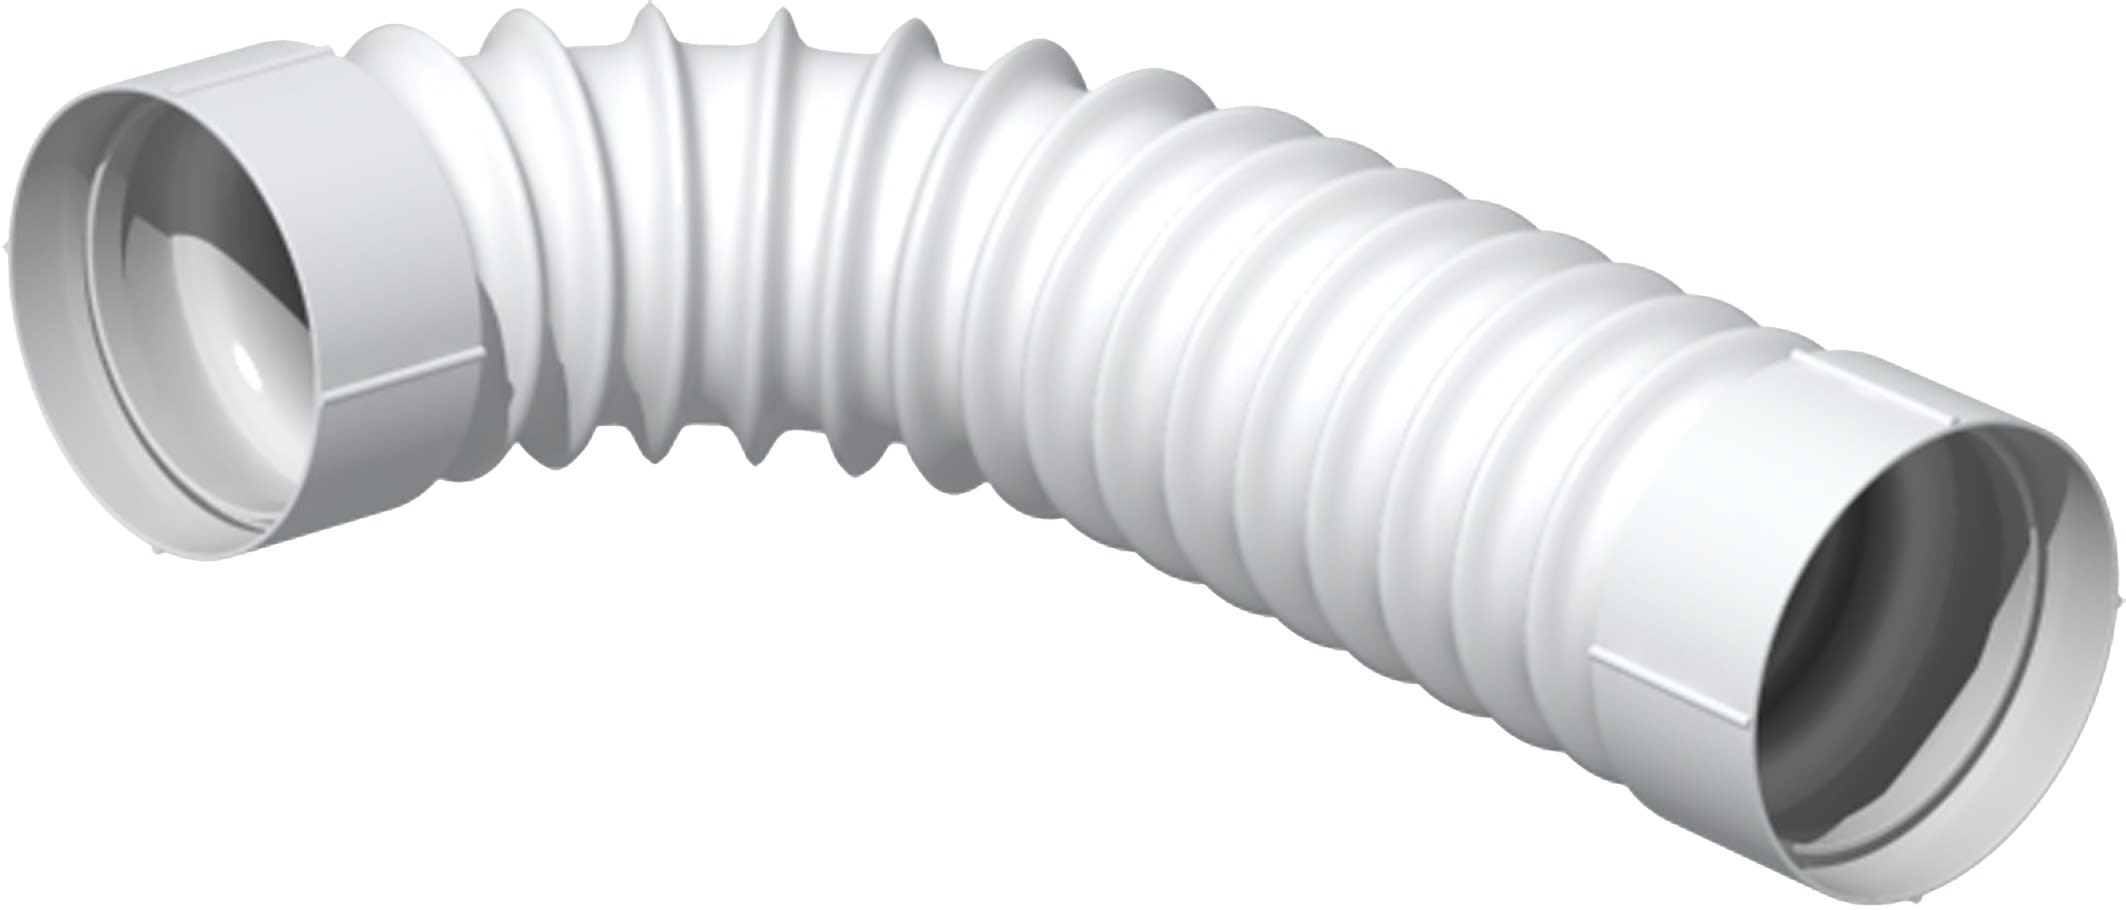 S&P - Conduit circulaire PVC souple avec deux manchons rigides, D 100 mm, long 50 cm